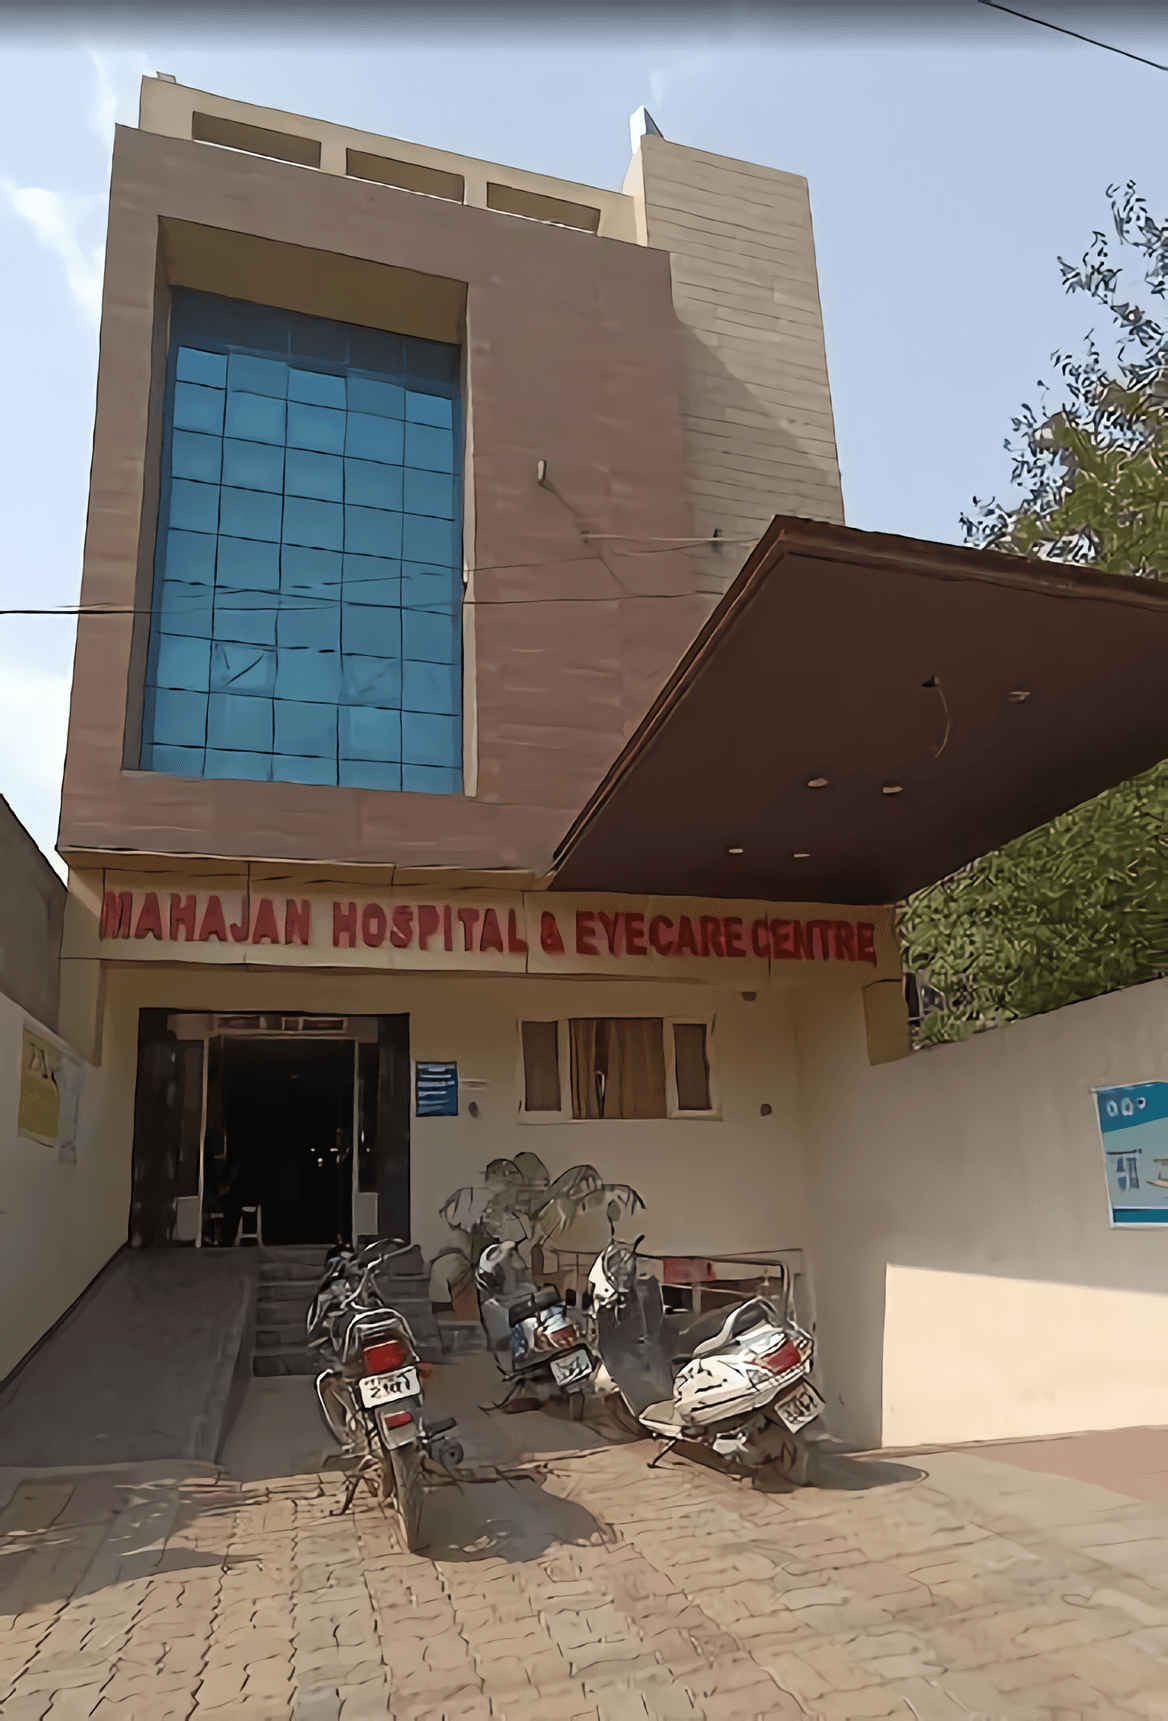 Mahajan Hospital & Eye Care Centre